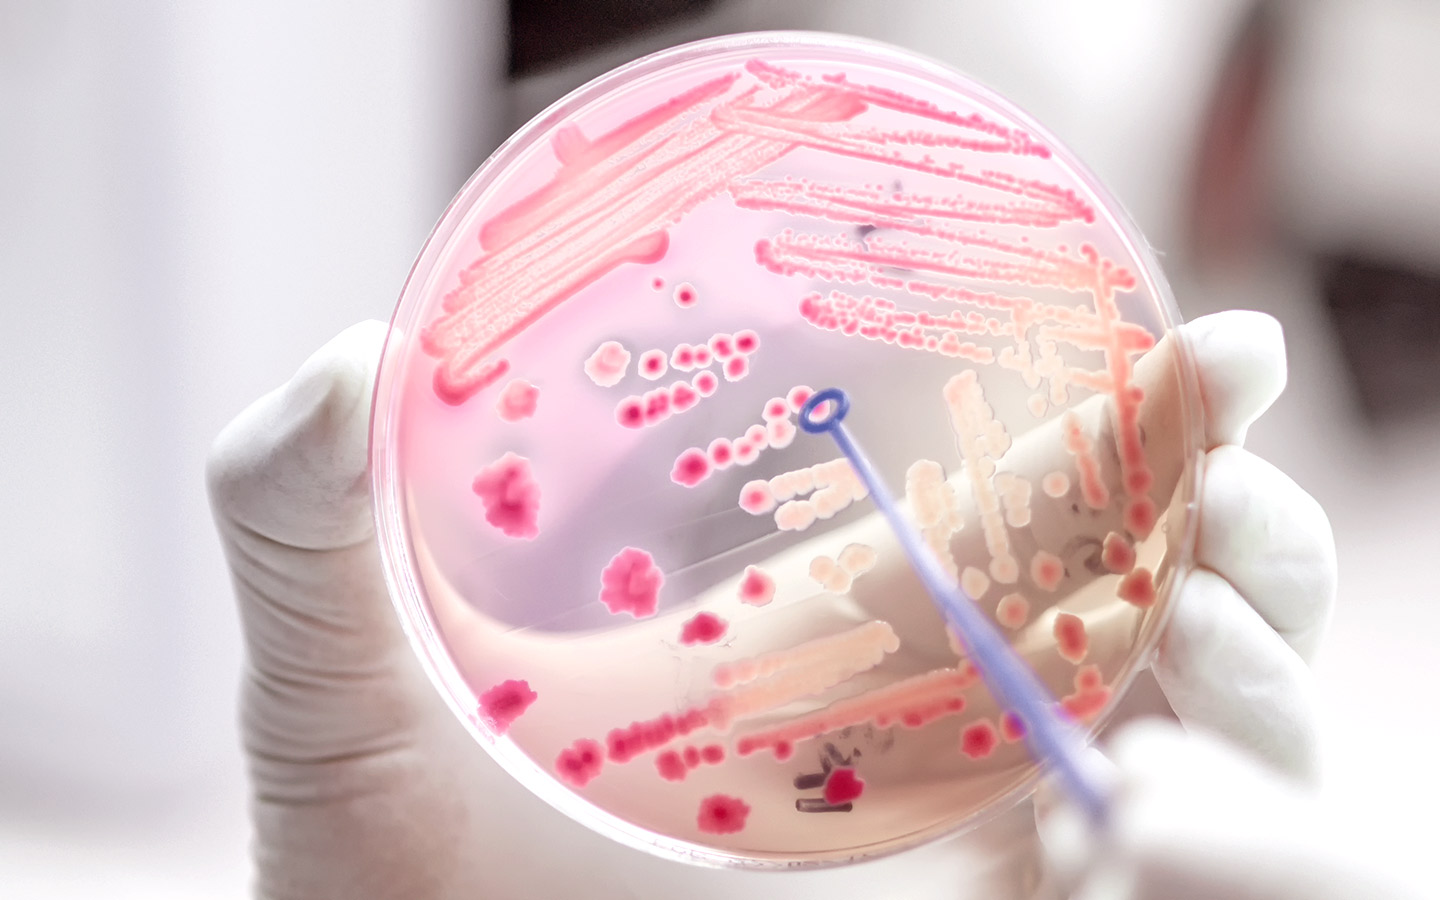 Foto: Eine Petrischale mit Bakterien.